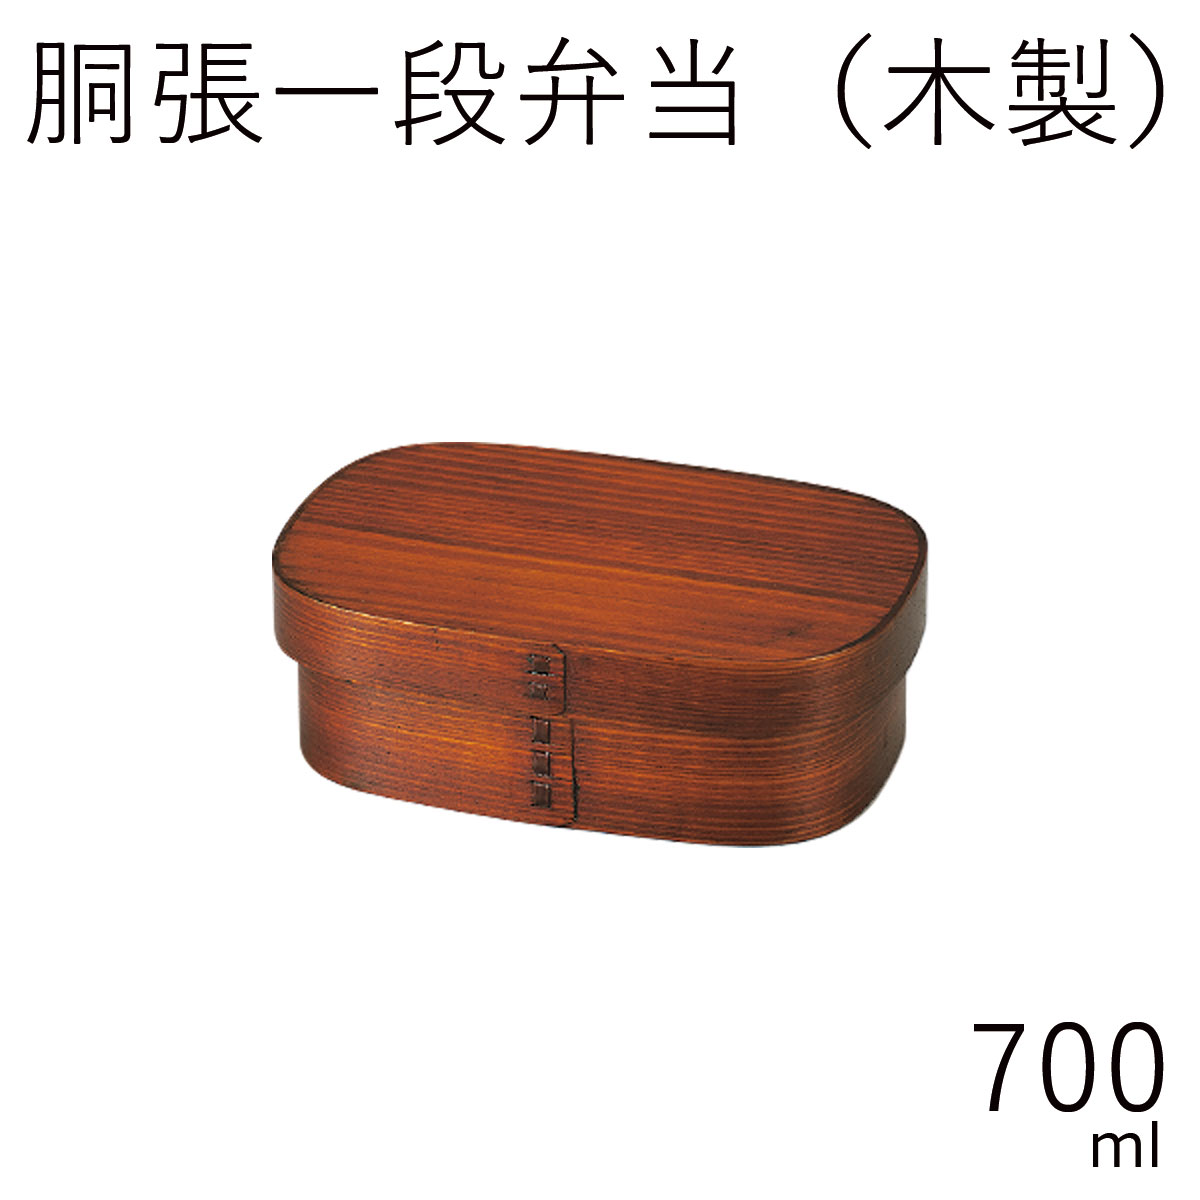 楽天市場】弁当箱”HAKOYA 《木製》小判一段弁当 大 スリ漆 750ml